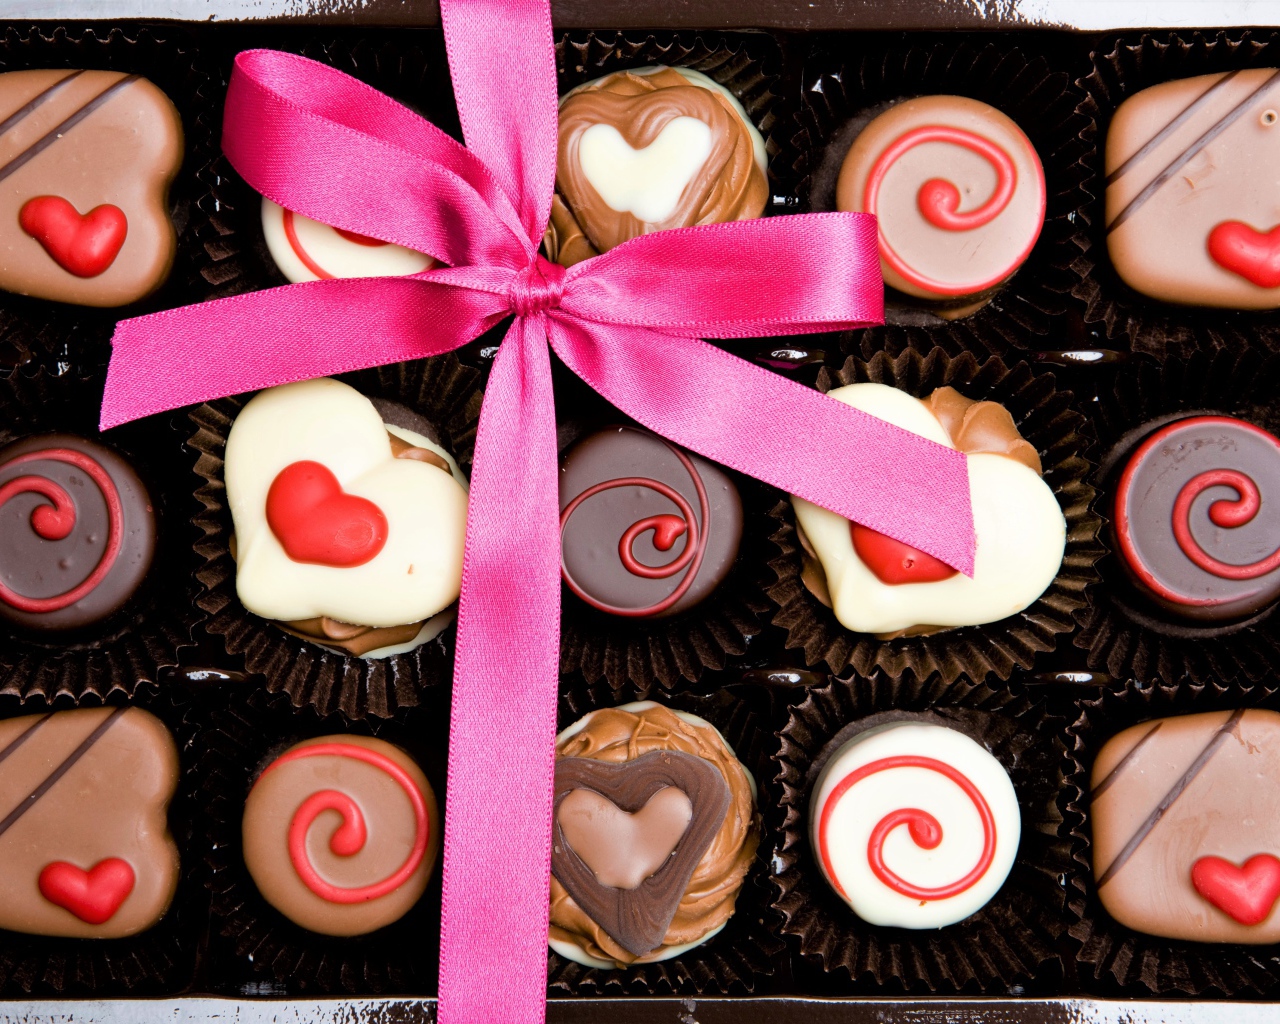 Шоколадные конфеты ассорти в подарок на День Святого Валентина 14 февраля